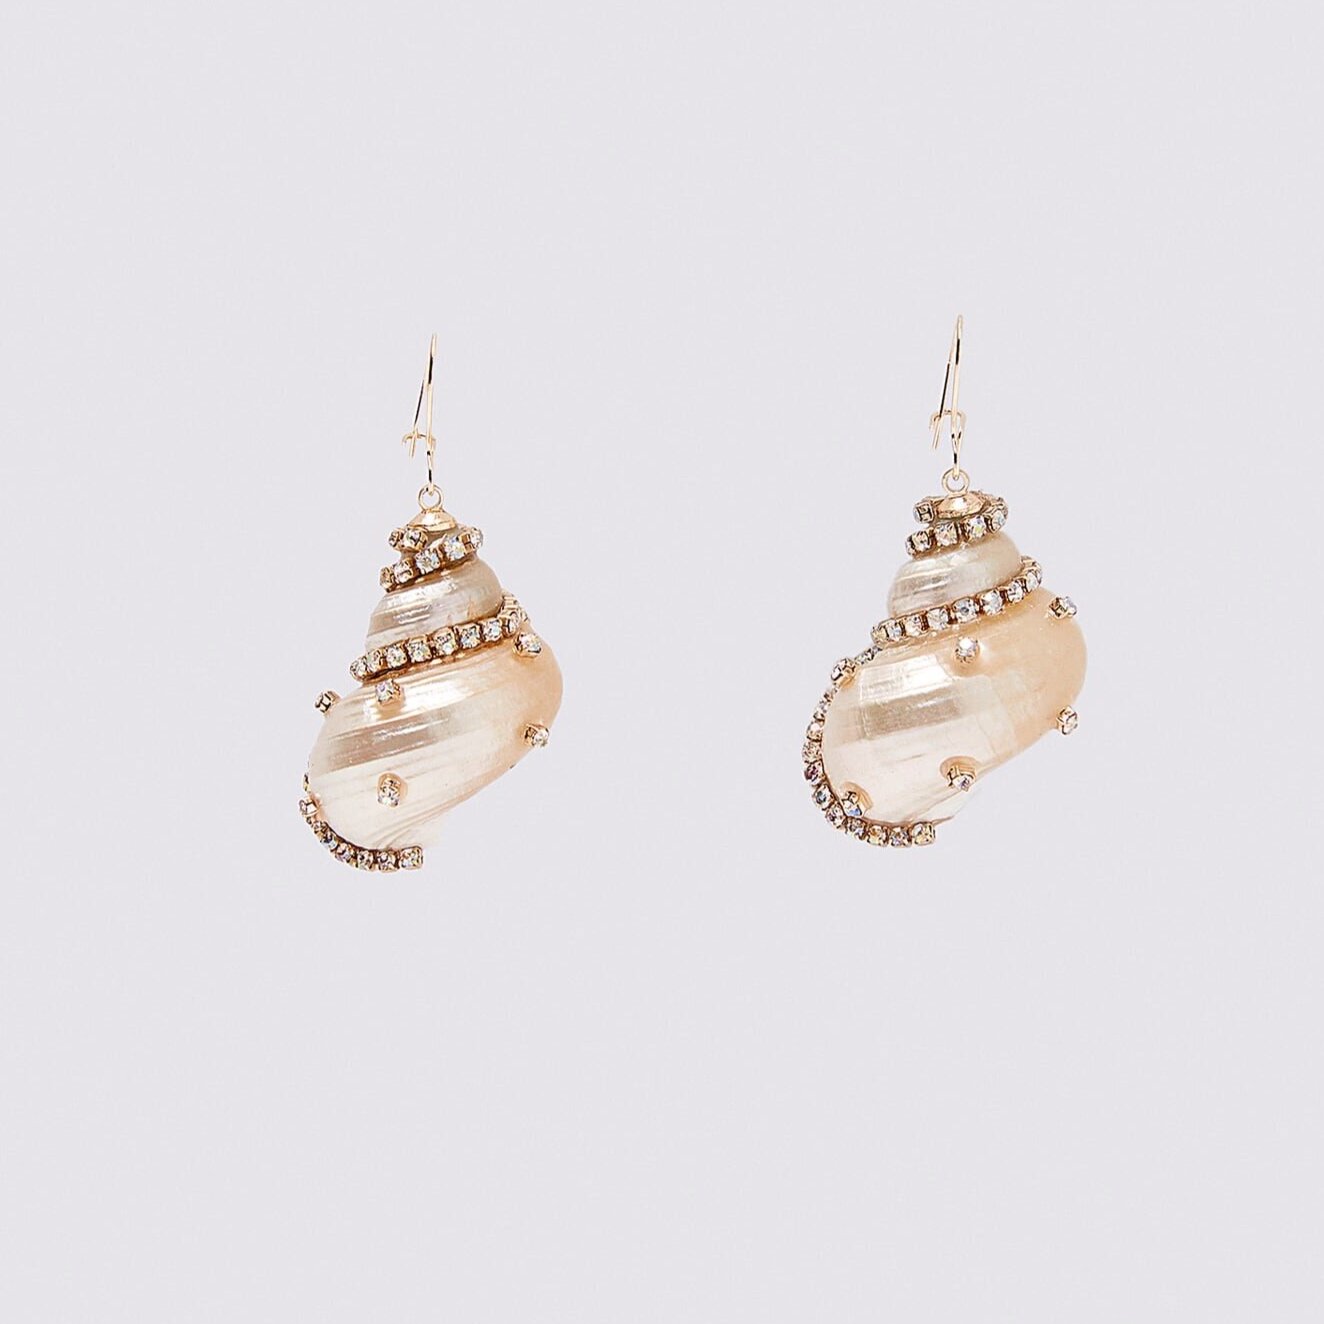 Zara+earrings.jpg